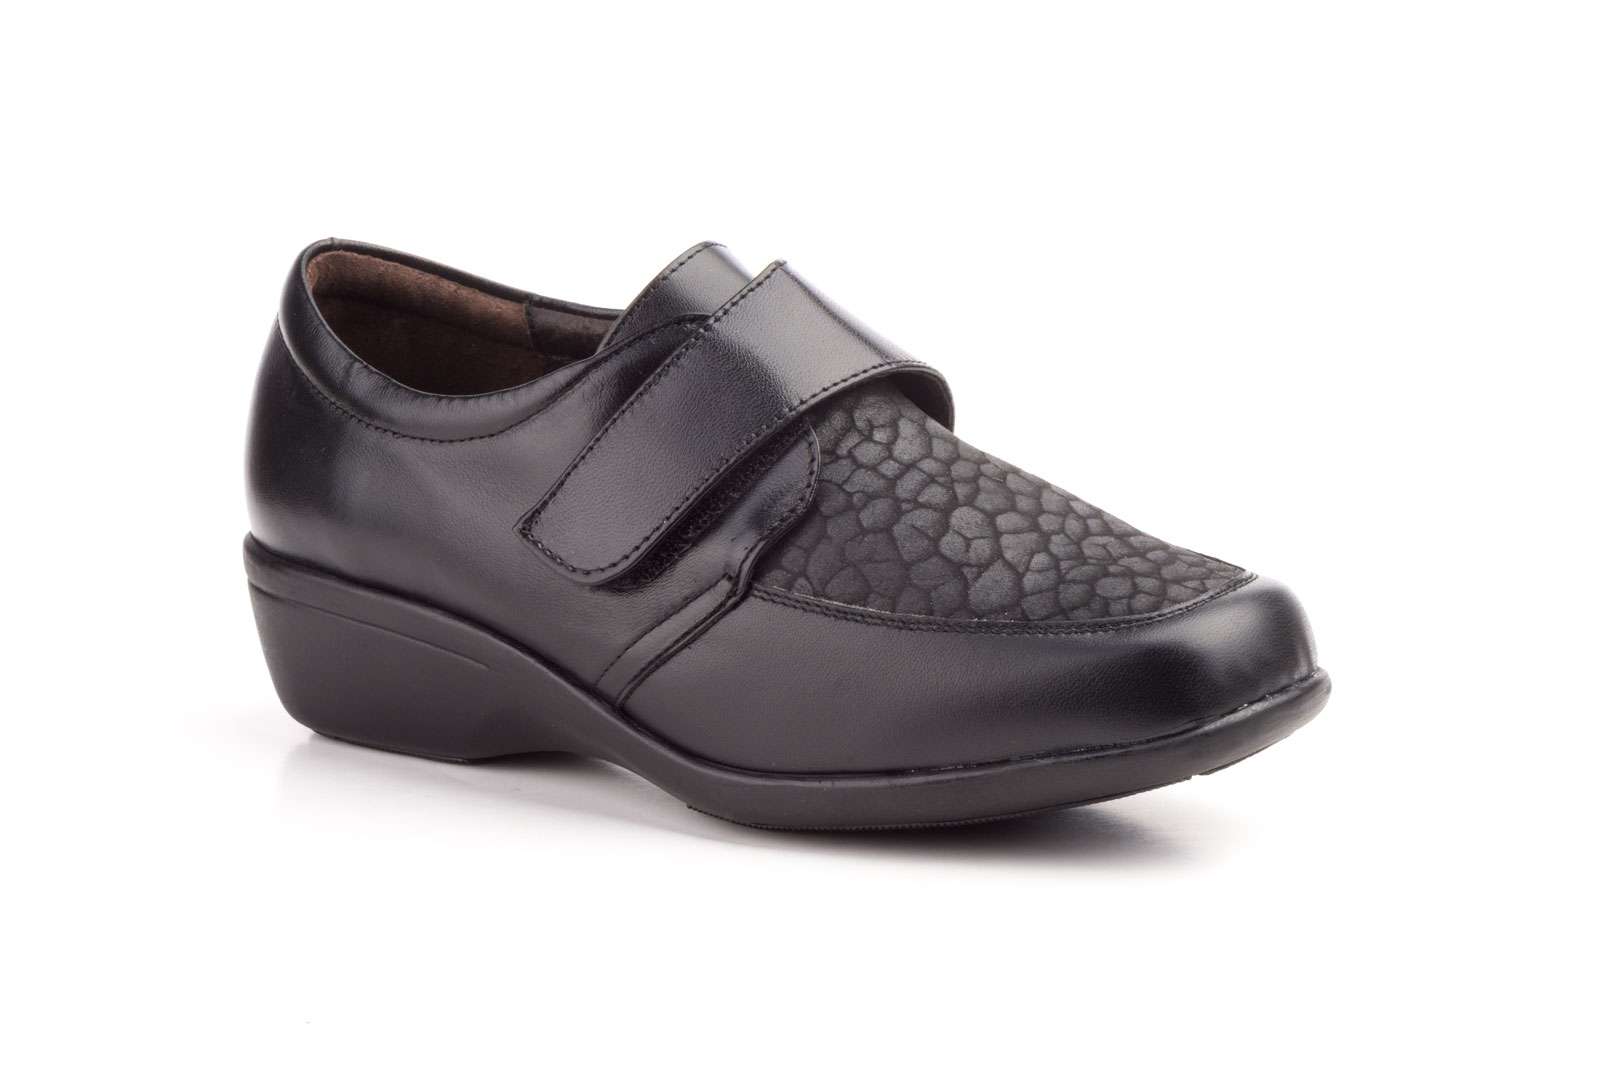 Zapatos Mujer Piel Negro Lycra  -  Ref. 782 Negro